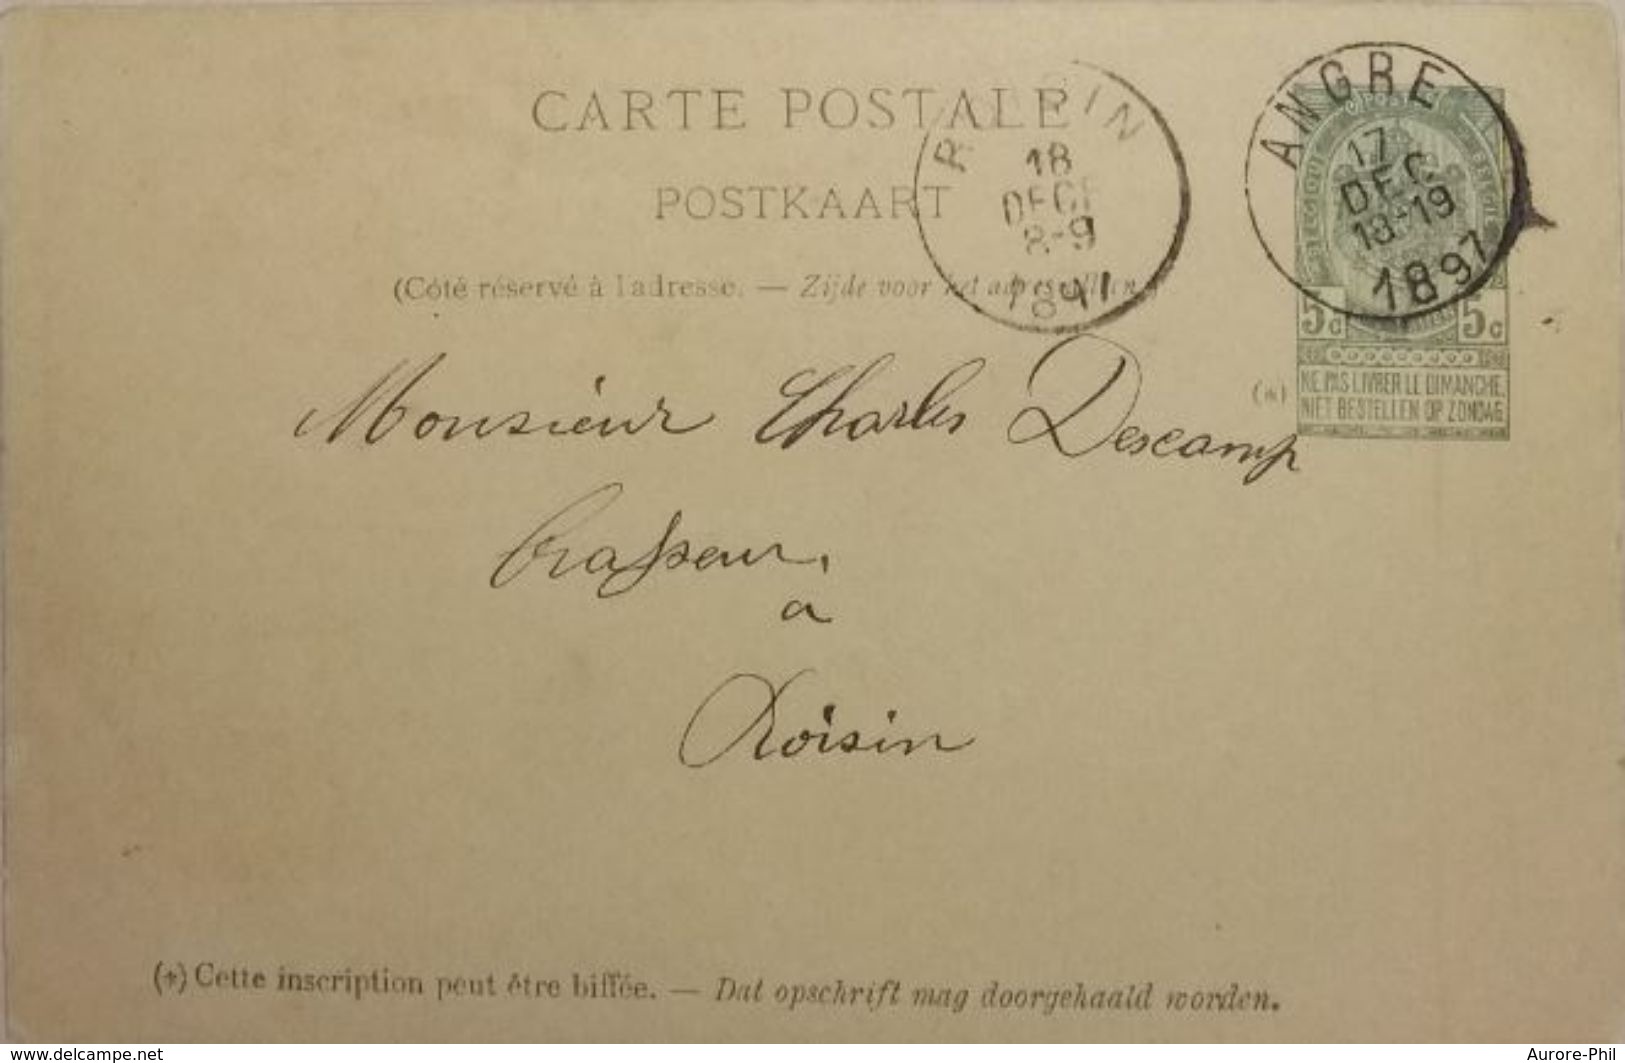 Carte Postale De 1897 écrite Par Charles Bernier Angre Vers Mr Descamp Roisin (Brasseur/Brasserie)(Armoiries Du Royaume) - 1893-1907 Armoiries